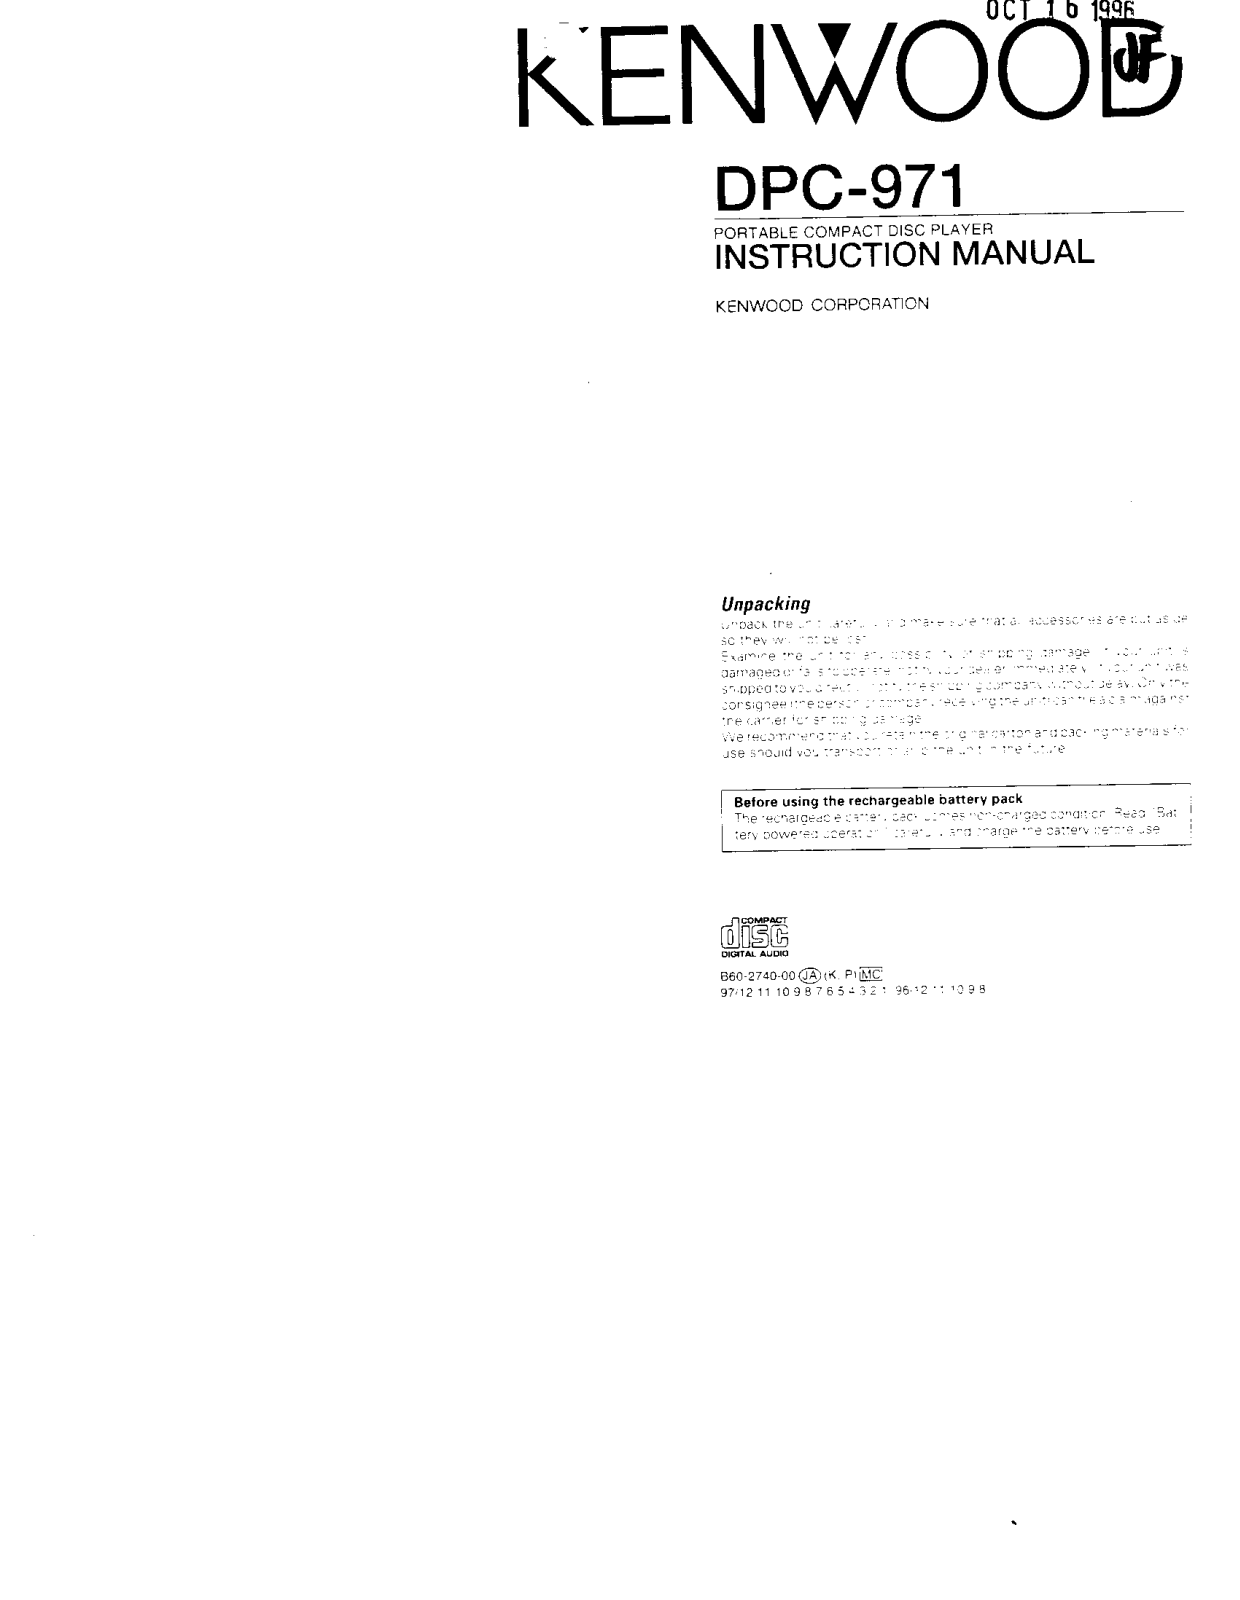 Kenwood DPC-971 Owner's Manual